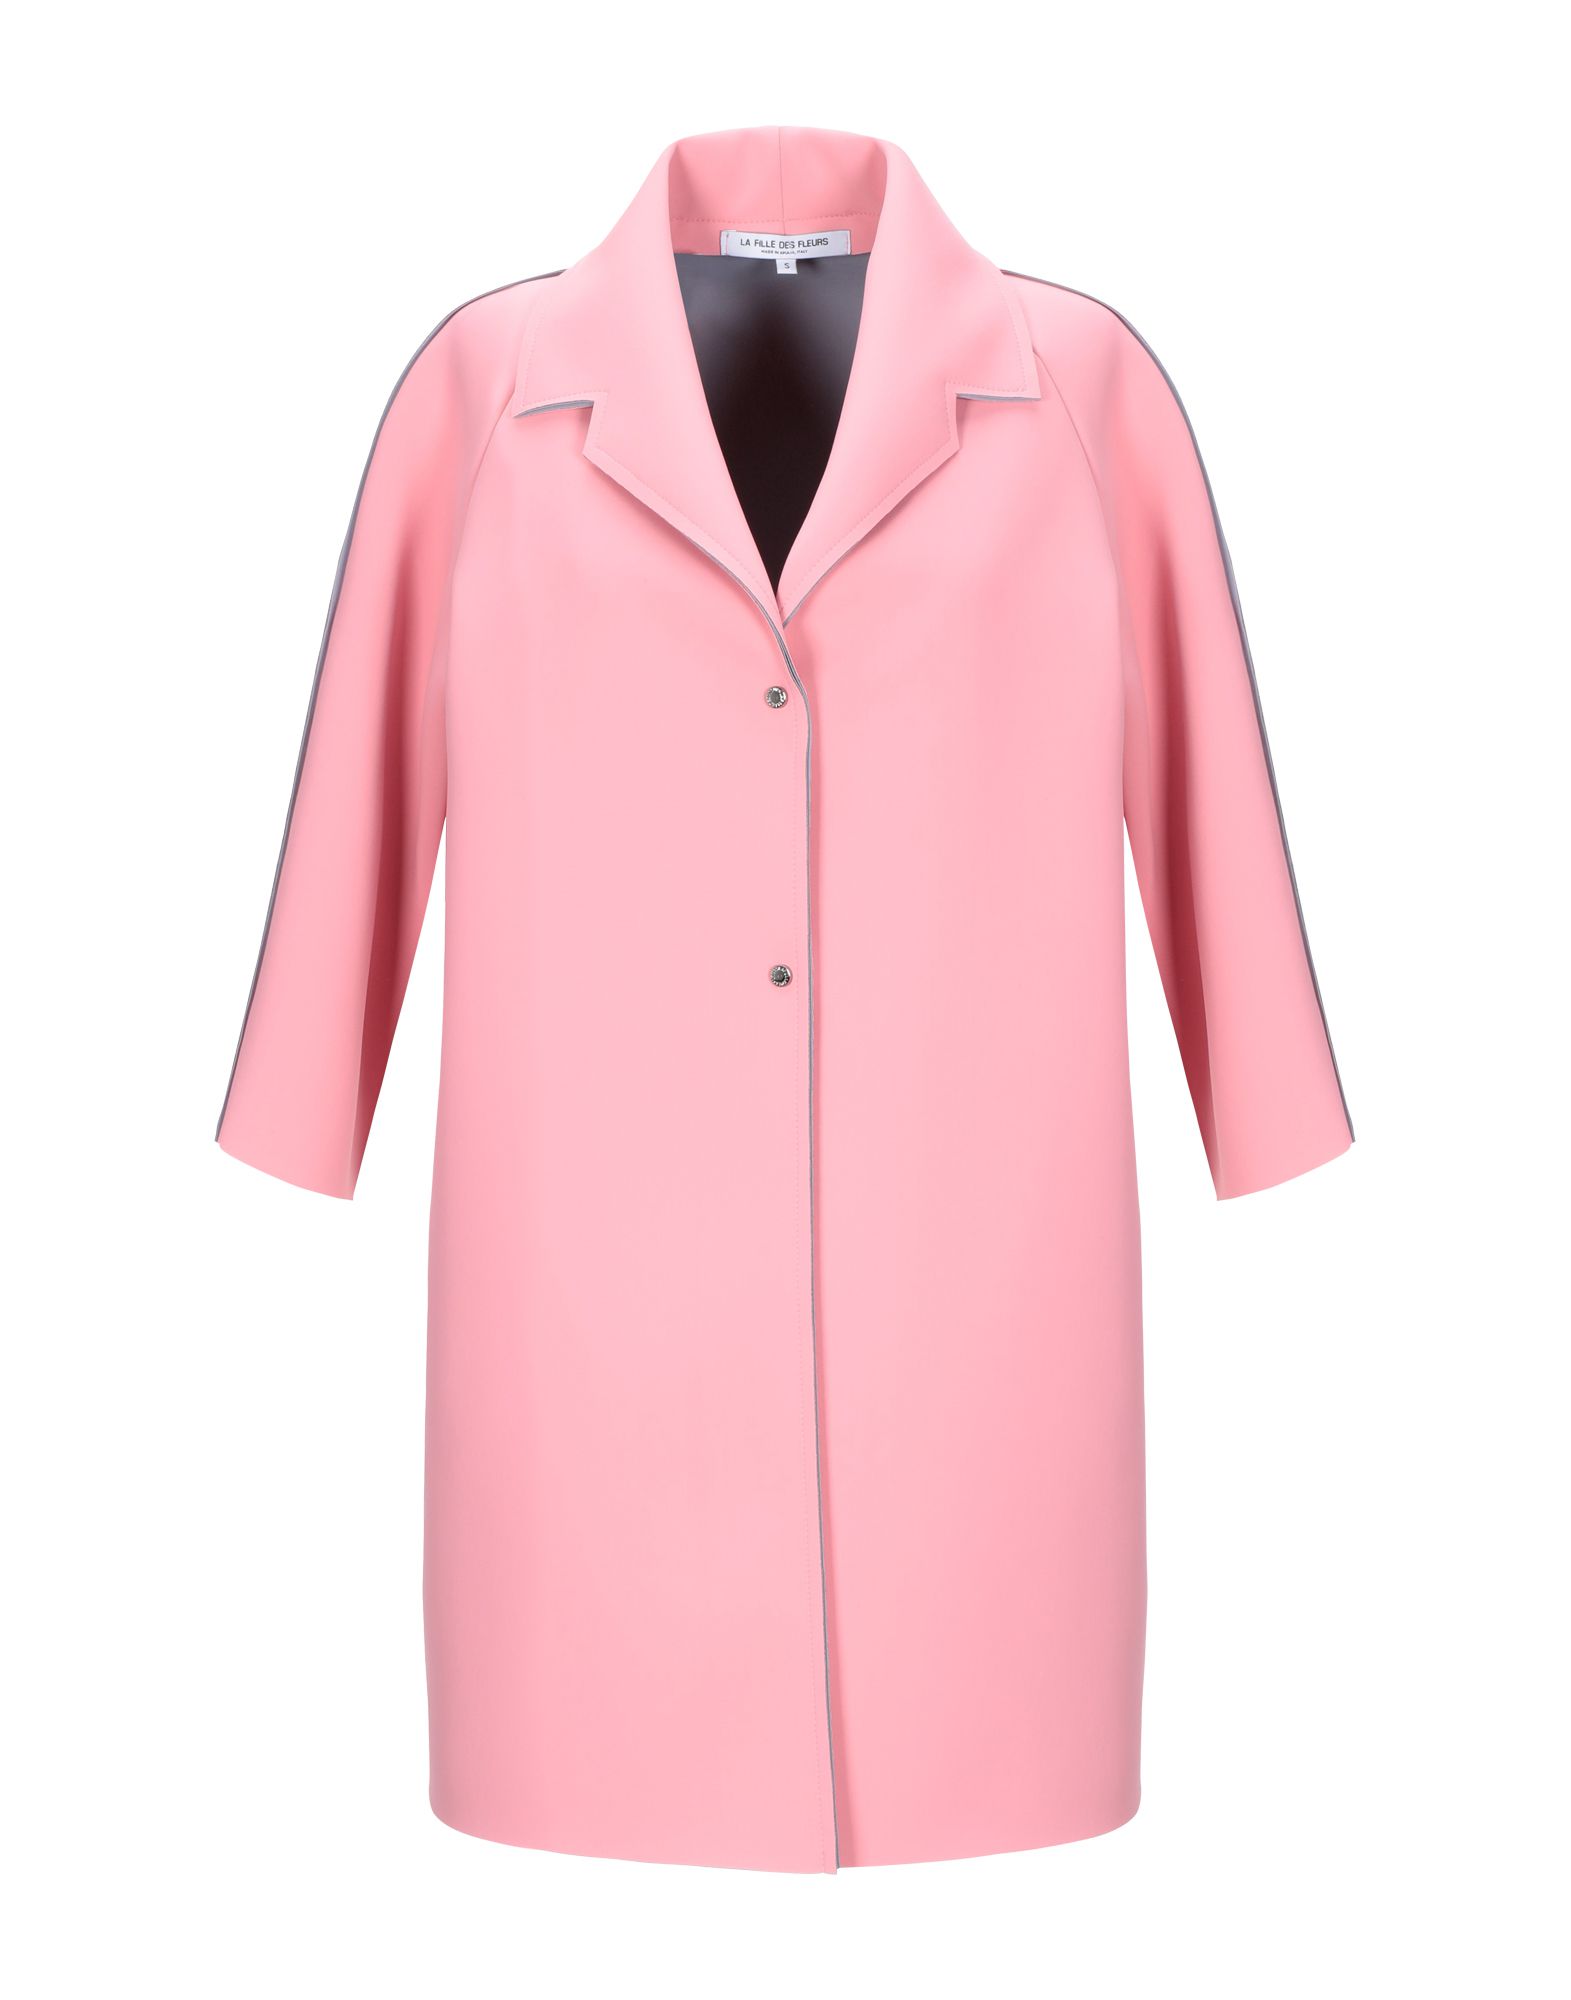 Легкое пальто  - Розовый,Синий цвет